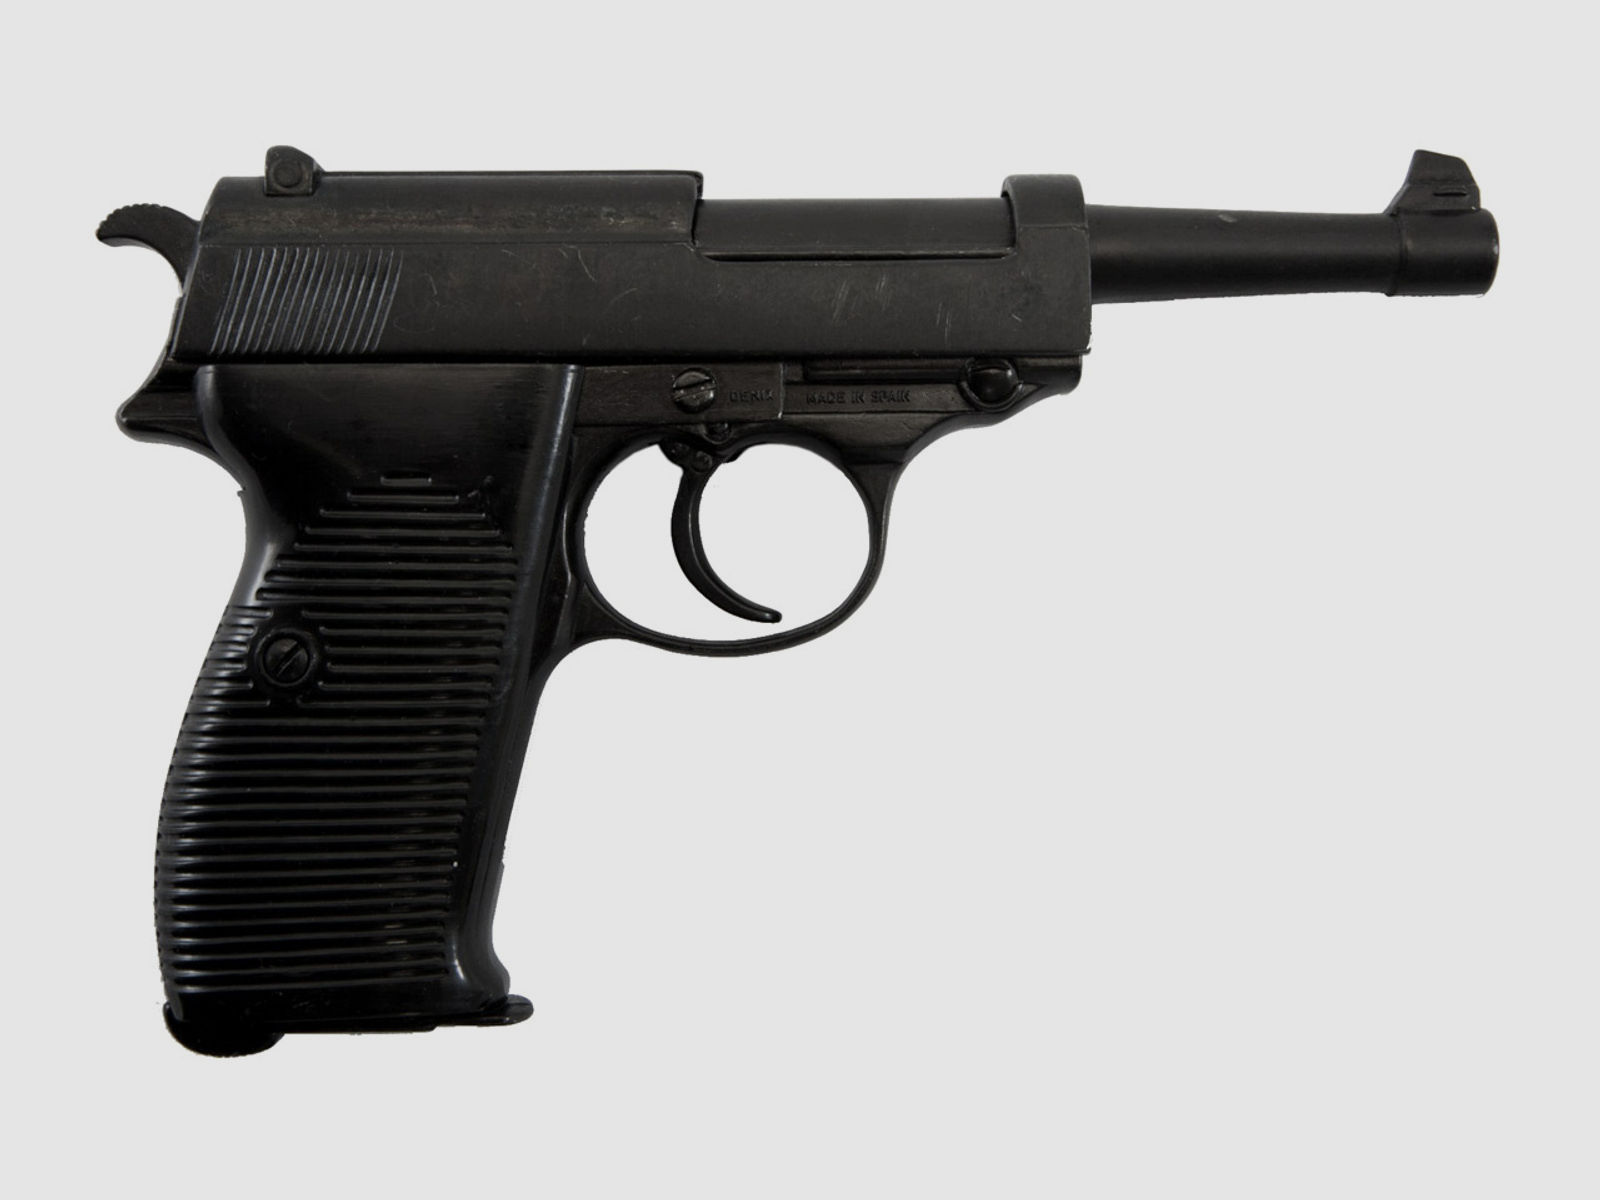 Denix Automatic Pistole Walther P38 deutsche MilitĂ¤rpistole 1938 LĂ¤nge 24 cm schwarz